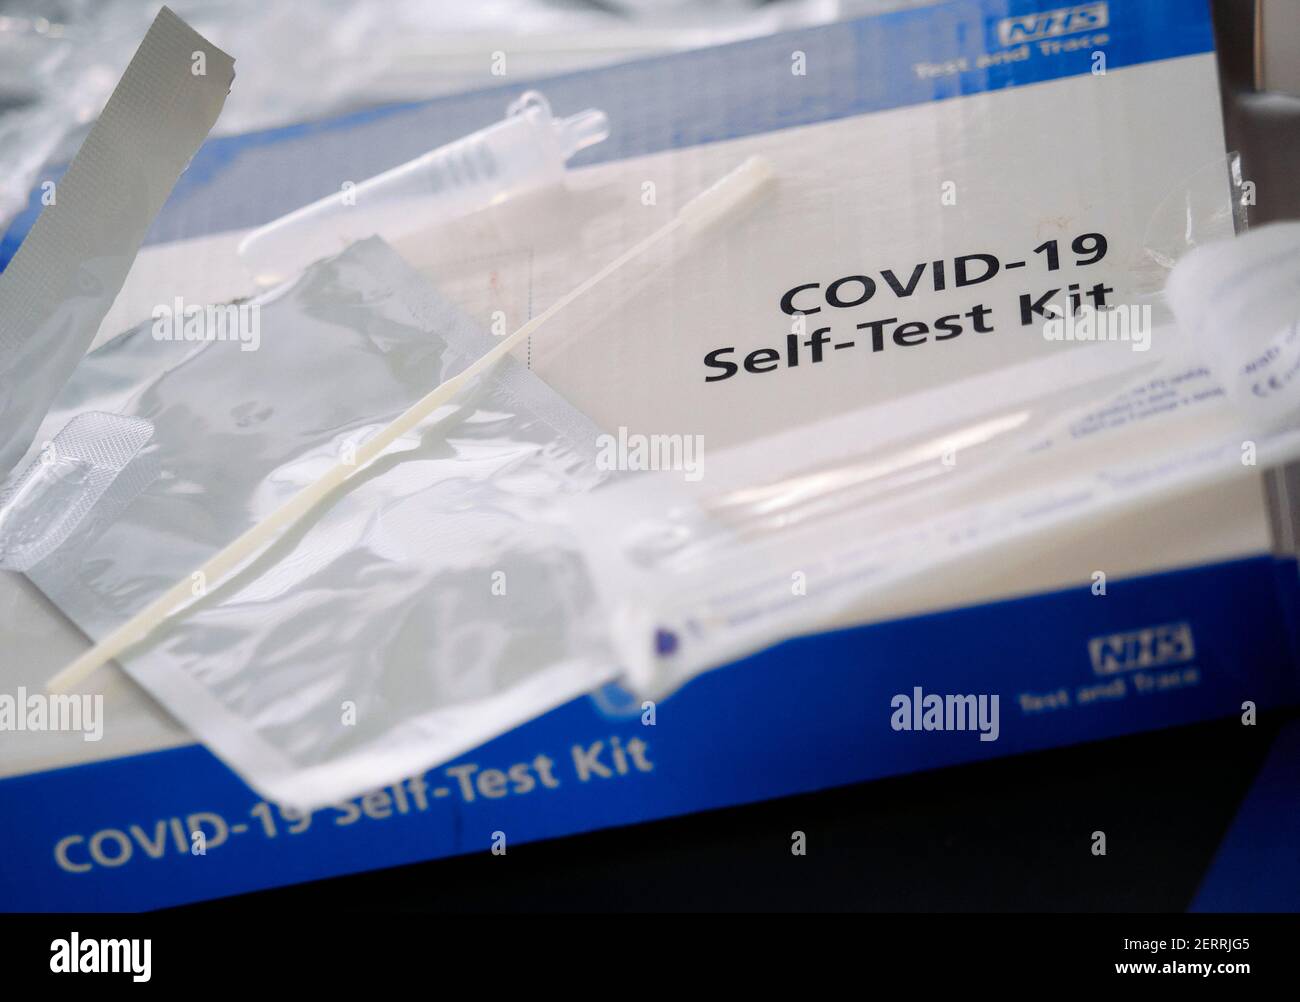 London, England - 28. Februar 2021: NHS Test and Trace Covid-19 Home Test Kit for Coronavirus using Swabs, herausgegeben von der britischen Regierung Stockfoto